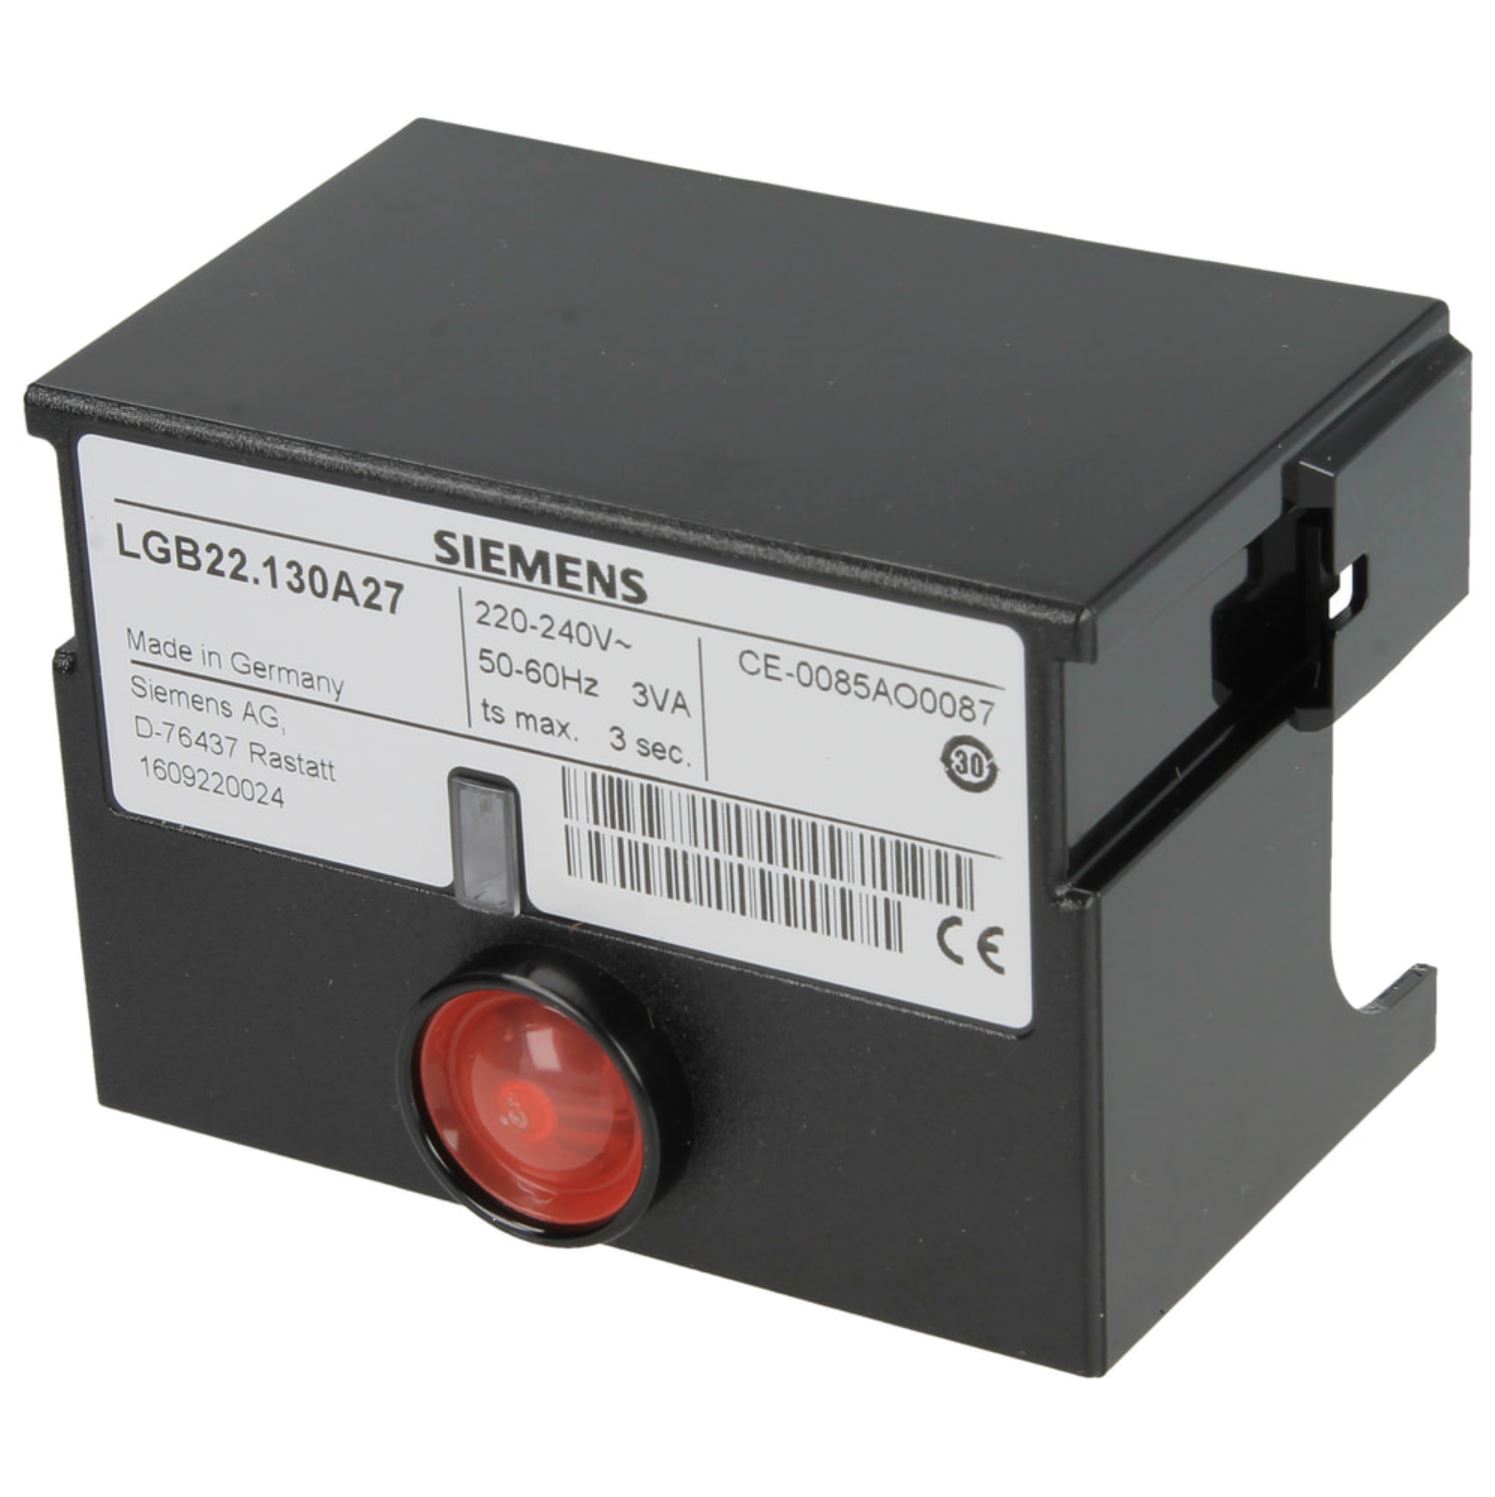 Siemens Gasfeuerungsautomat LGB 22.130 A27